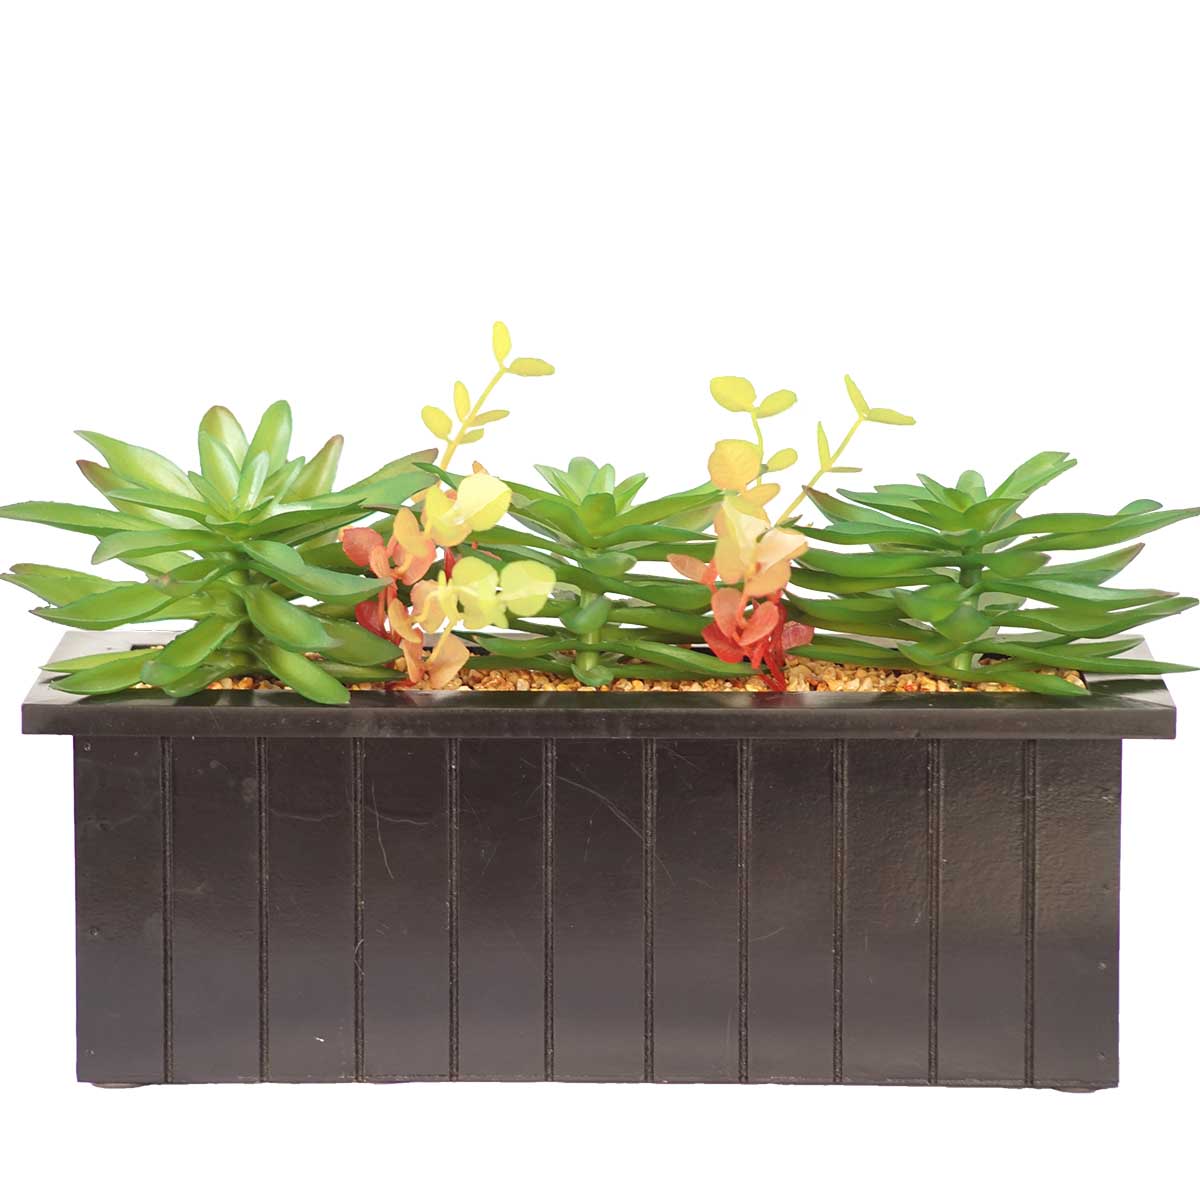 Vha102476 Succulents In Wooden Pot